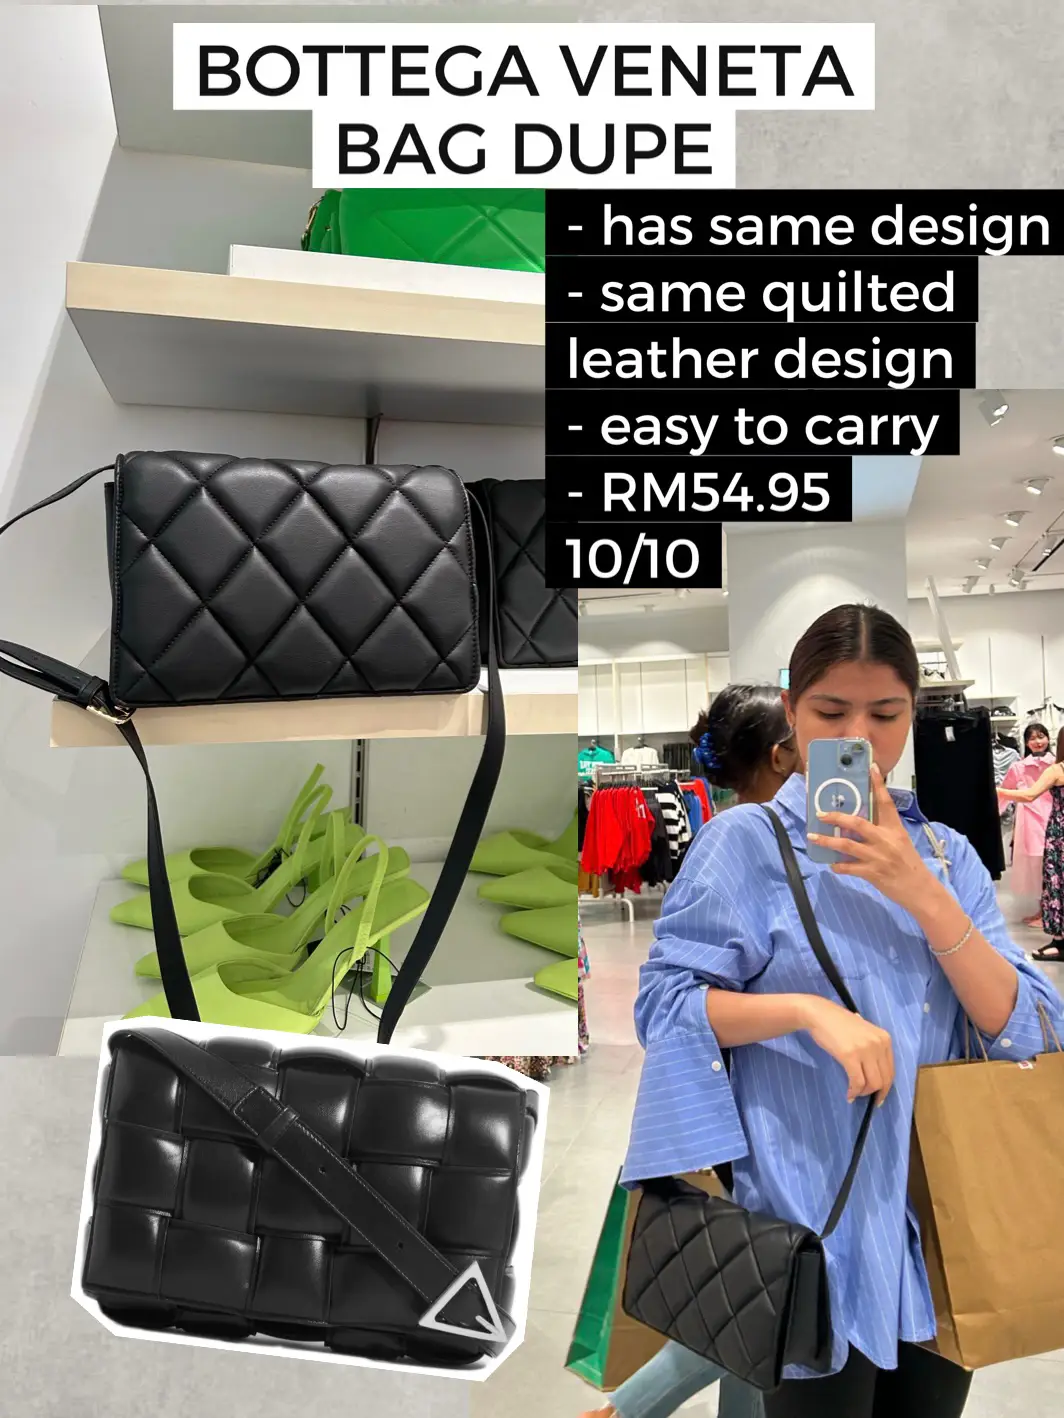 13 Amazing designer handbag dupes under £35 - Bang on Style